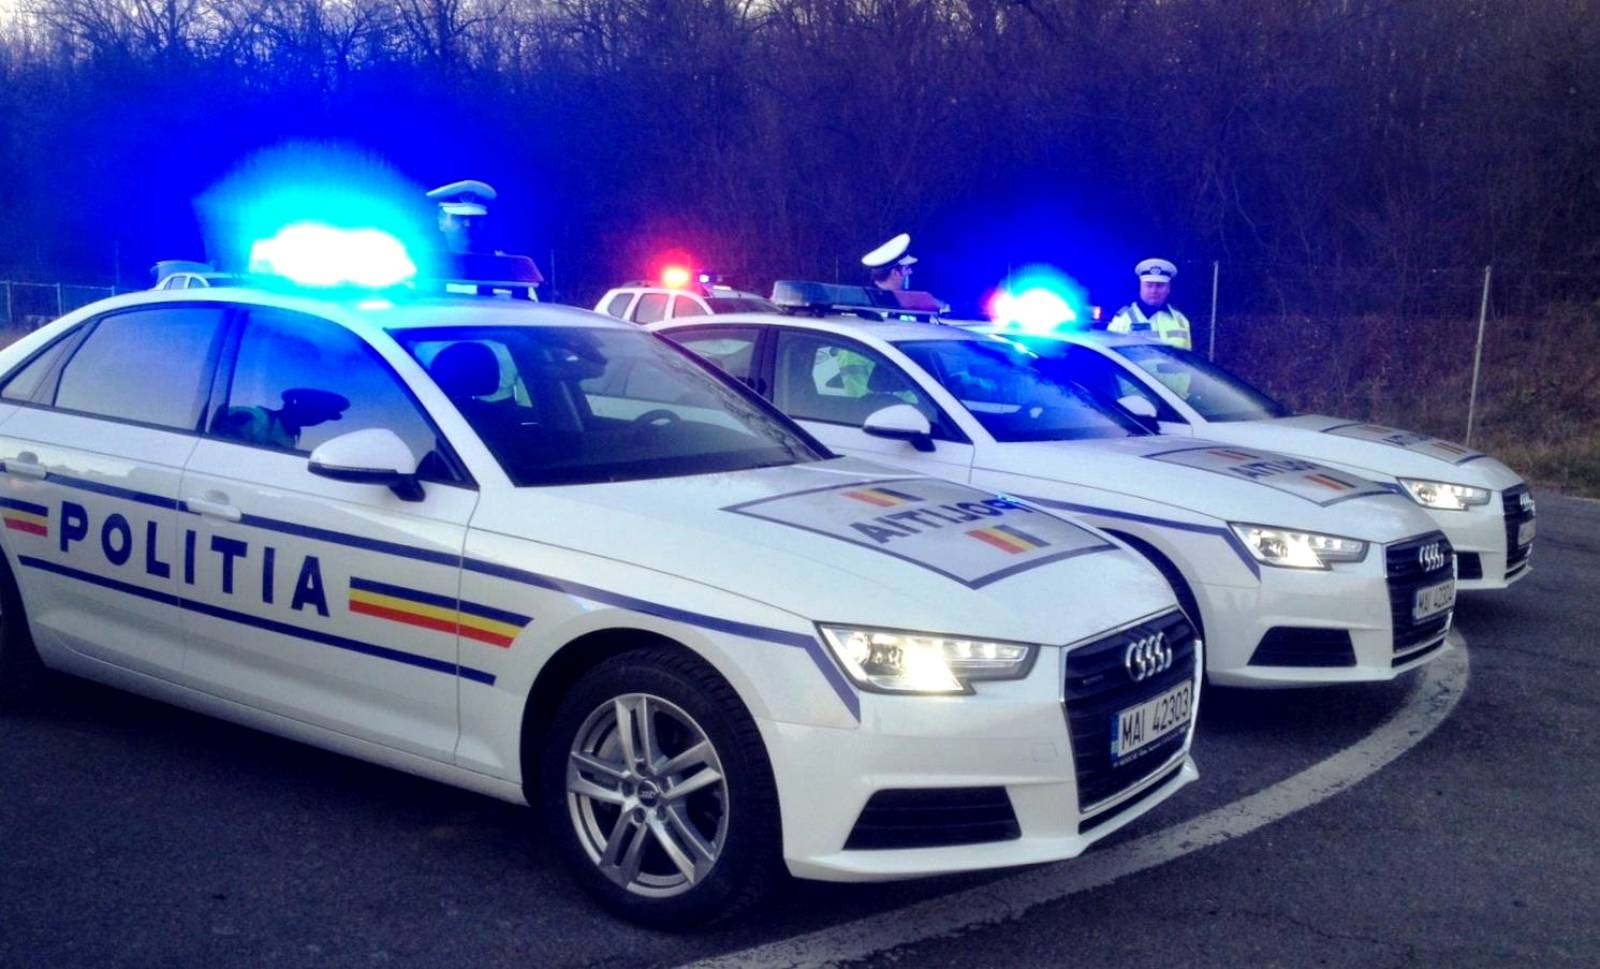 Opmærksomhed rumænsk politi, forebyggelse